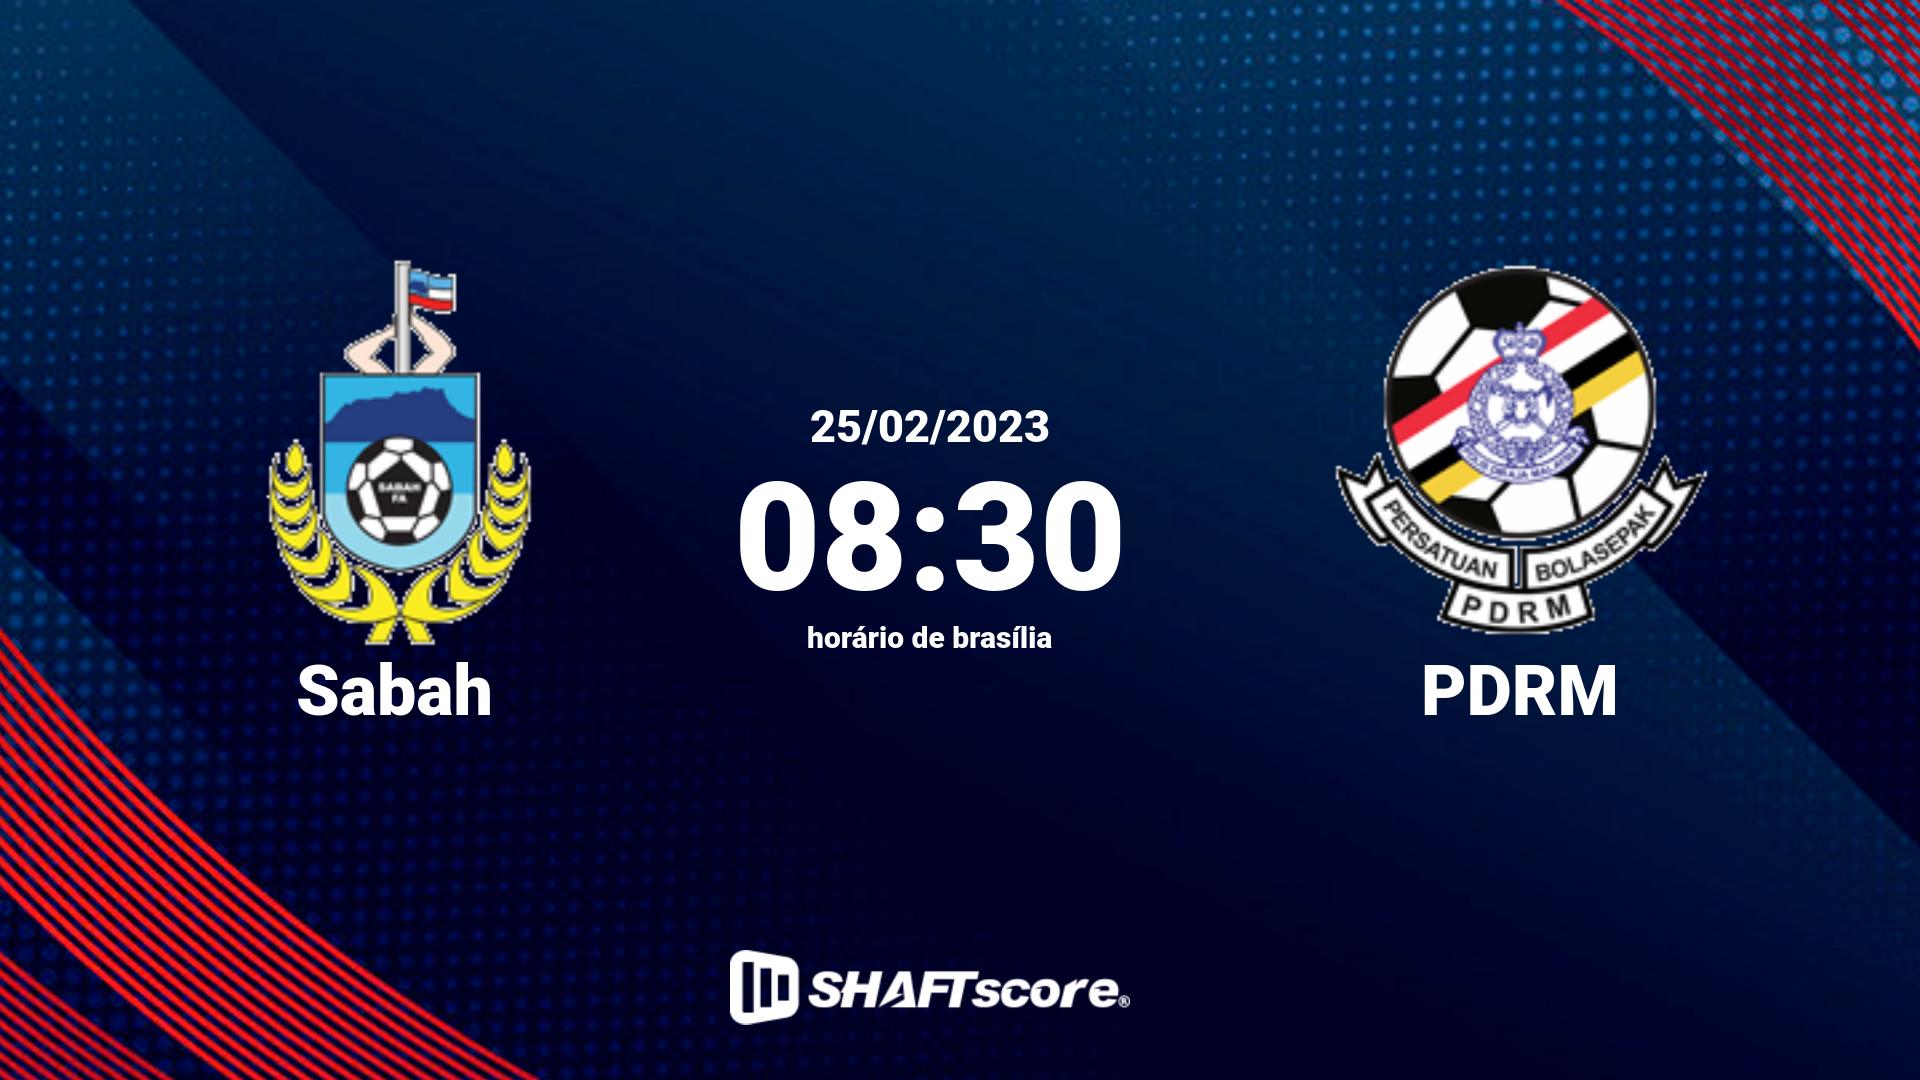 Estatísticas do jogo Sabah vs PDRM 25.02 08:30